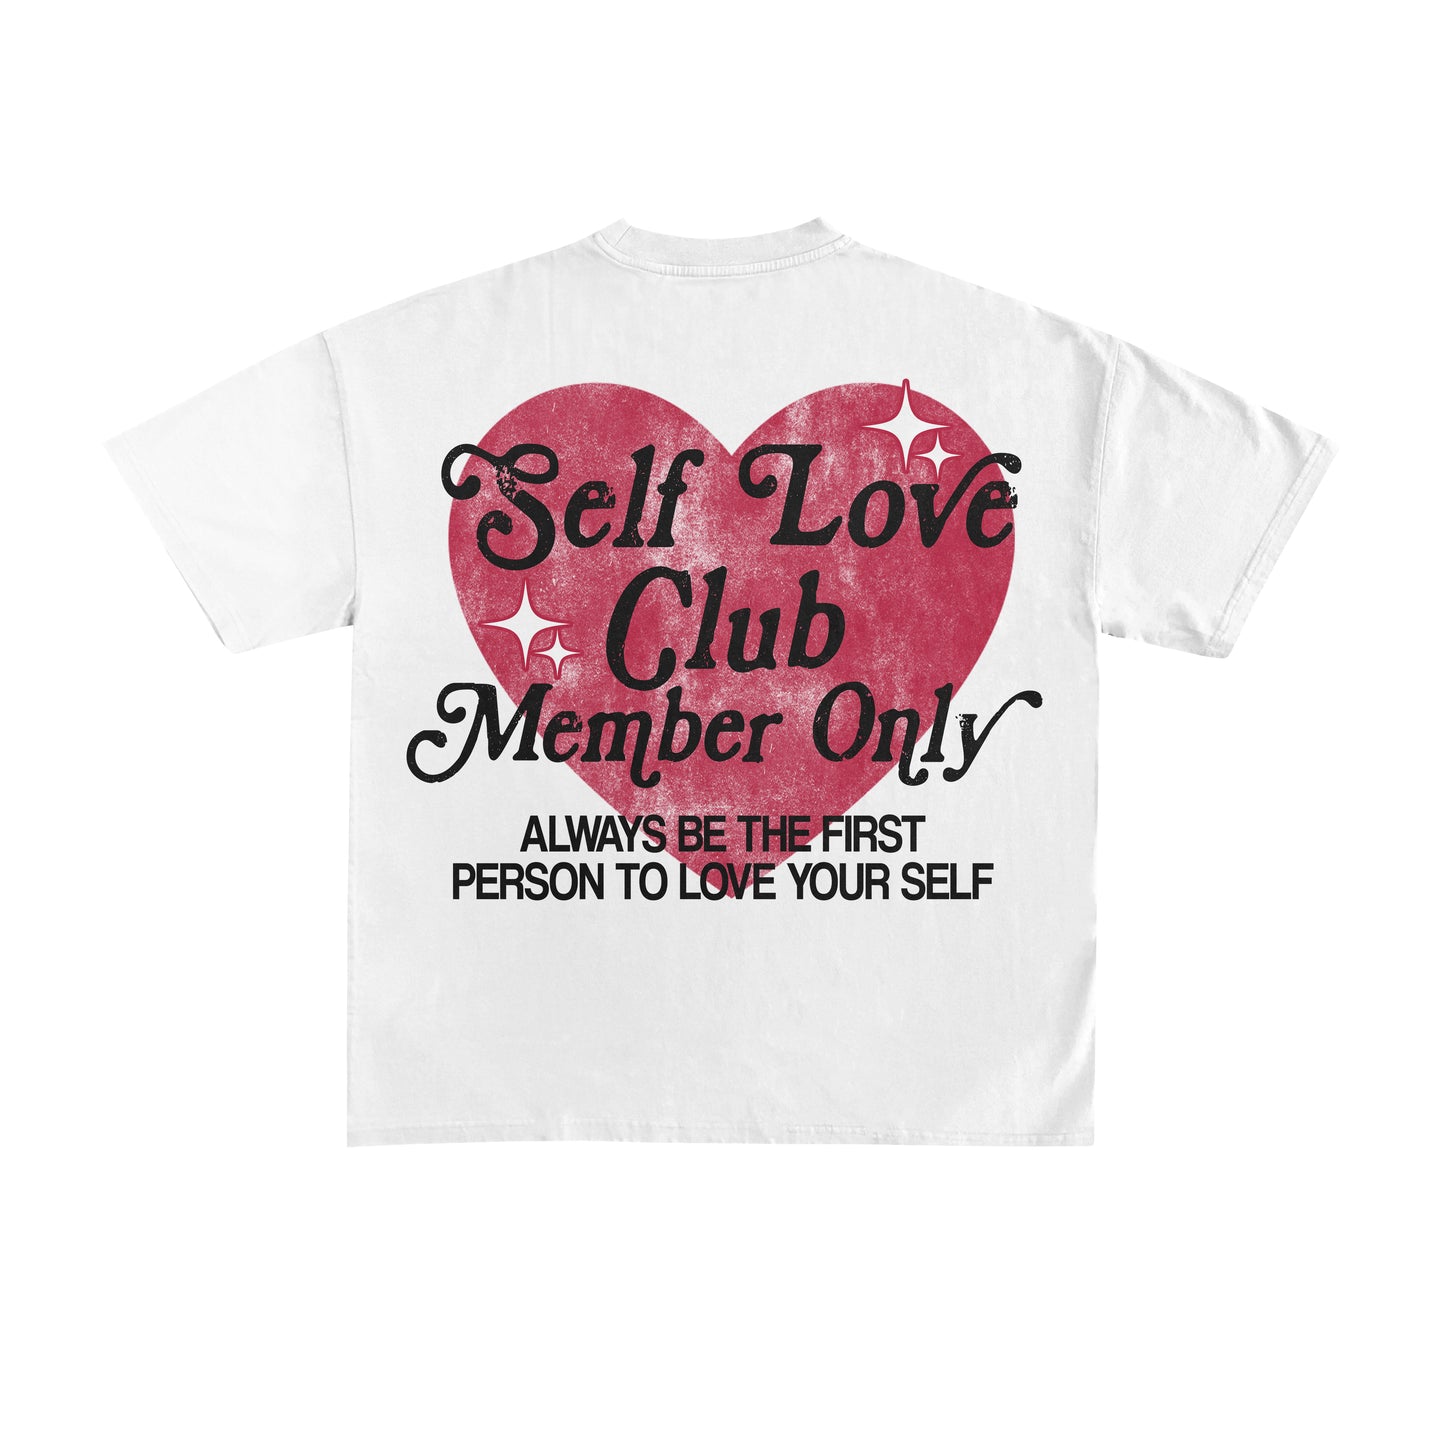 SELF LOVE CLUB MEMBERS ONLY